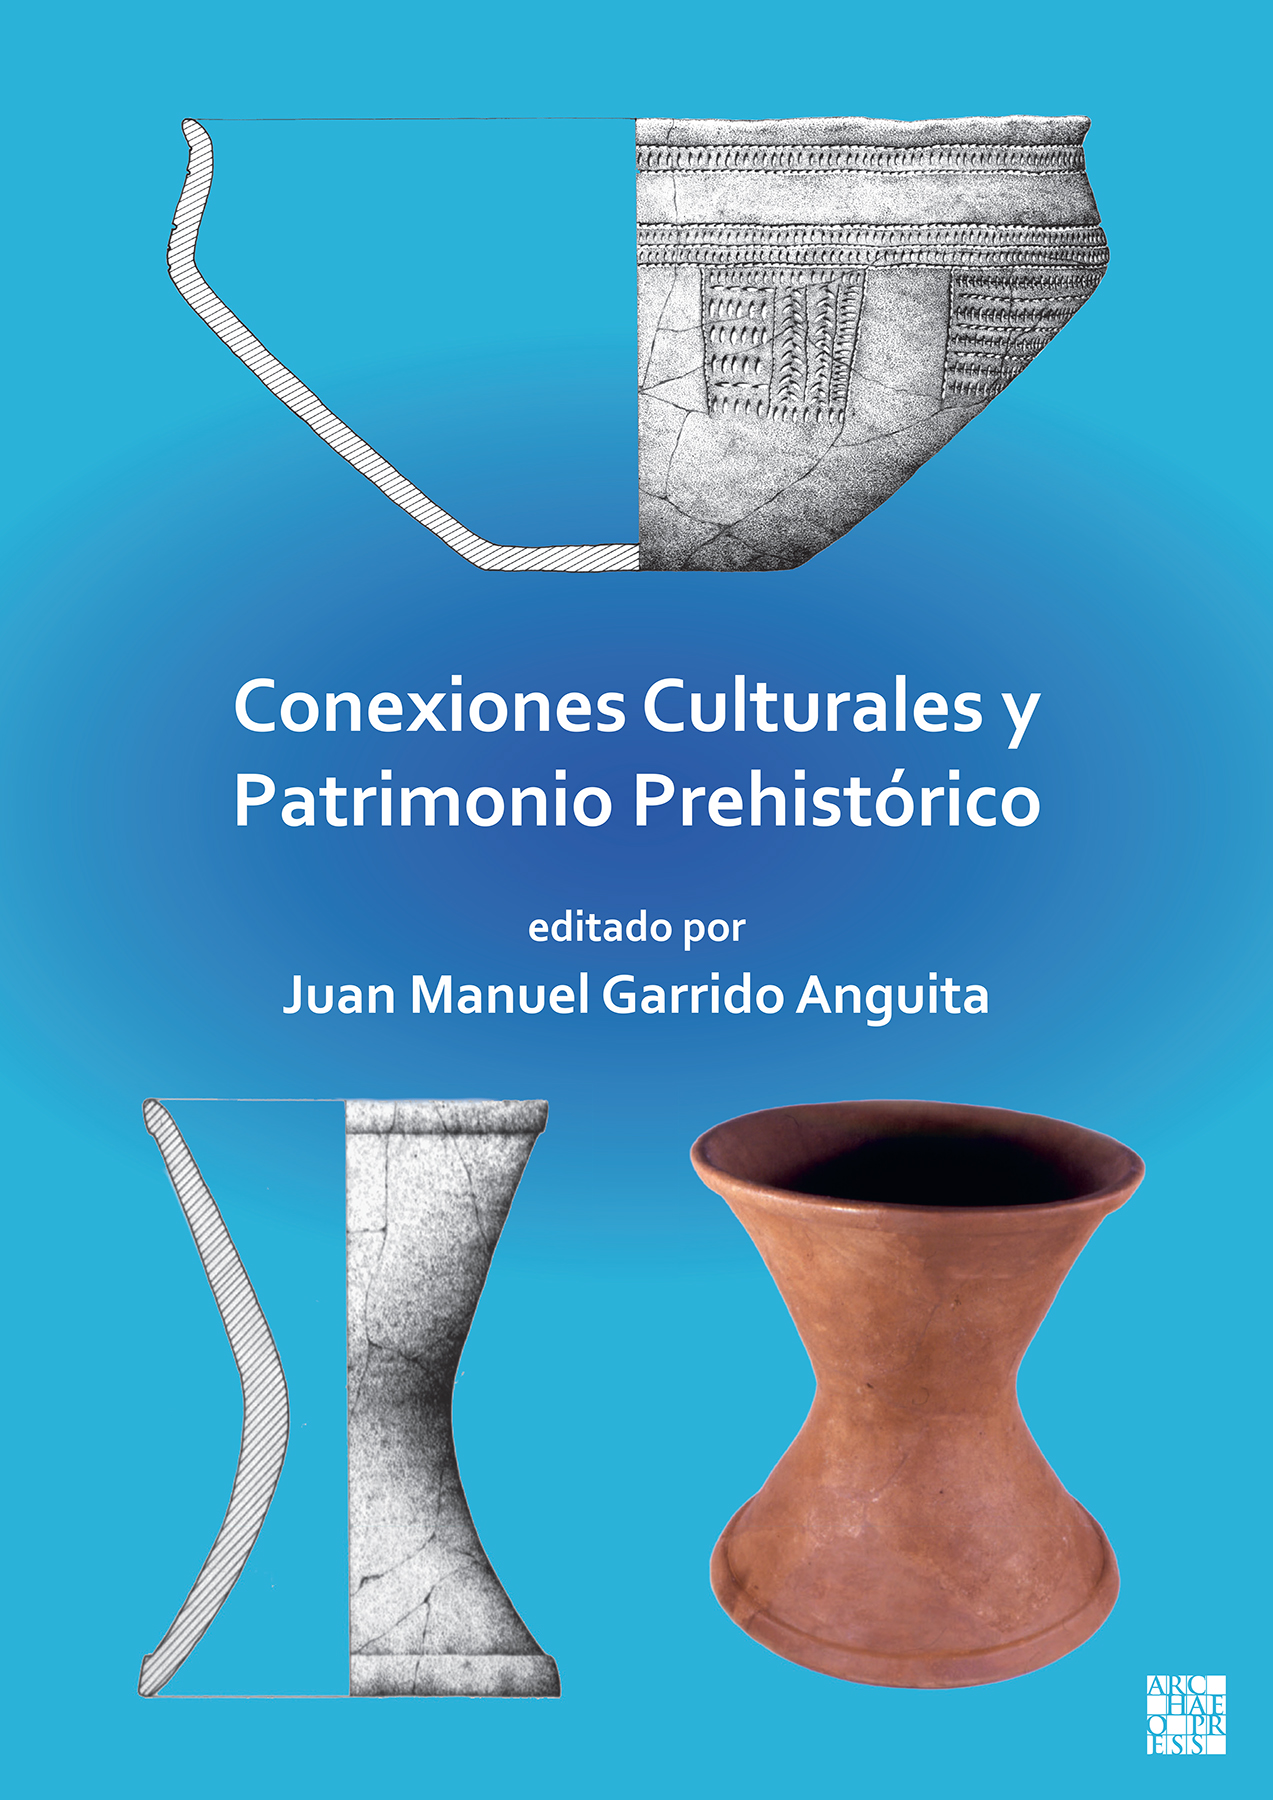 Imagen de portada del libro Conexiones Culturales y Patrimonio Prehistórico